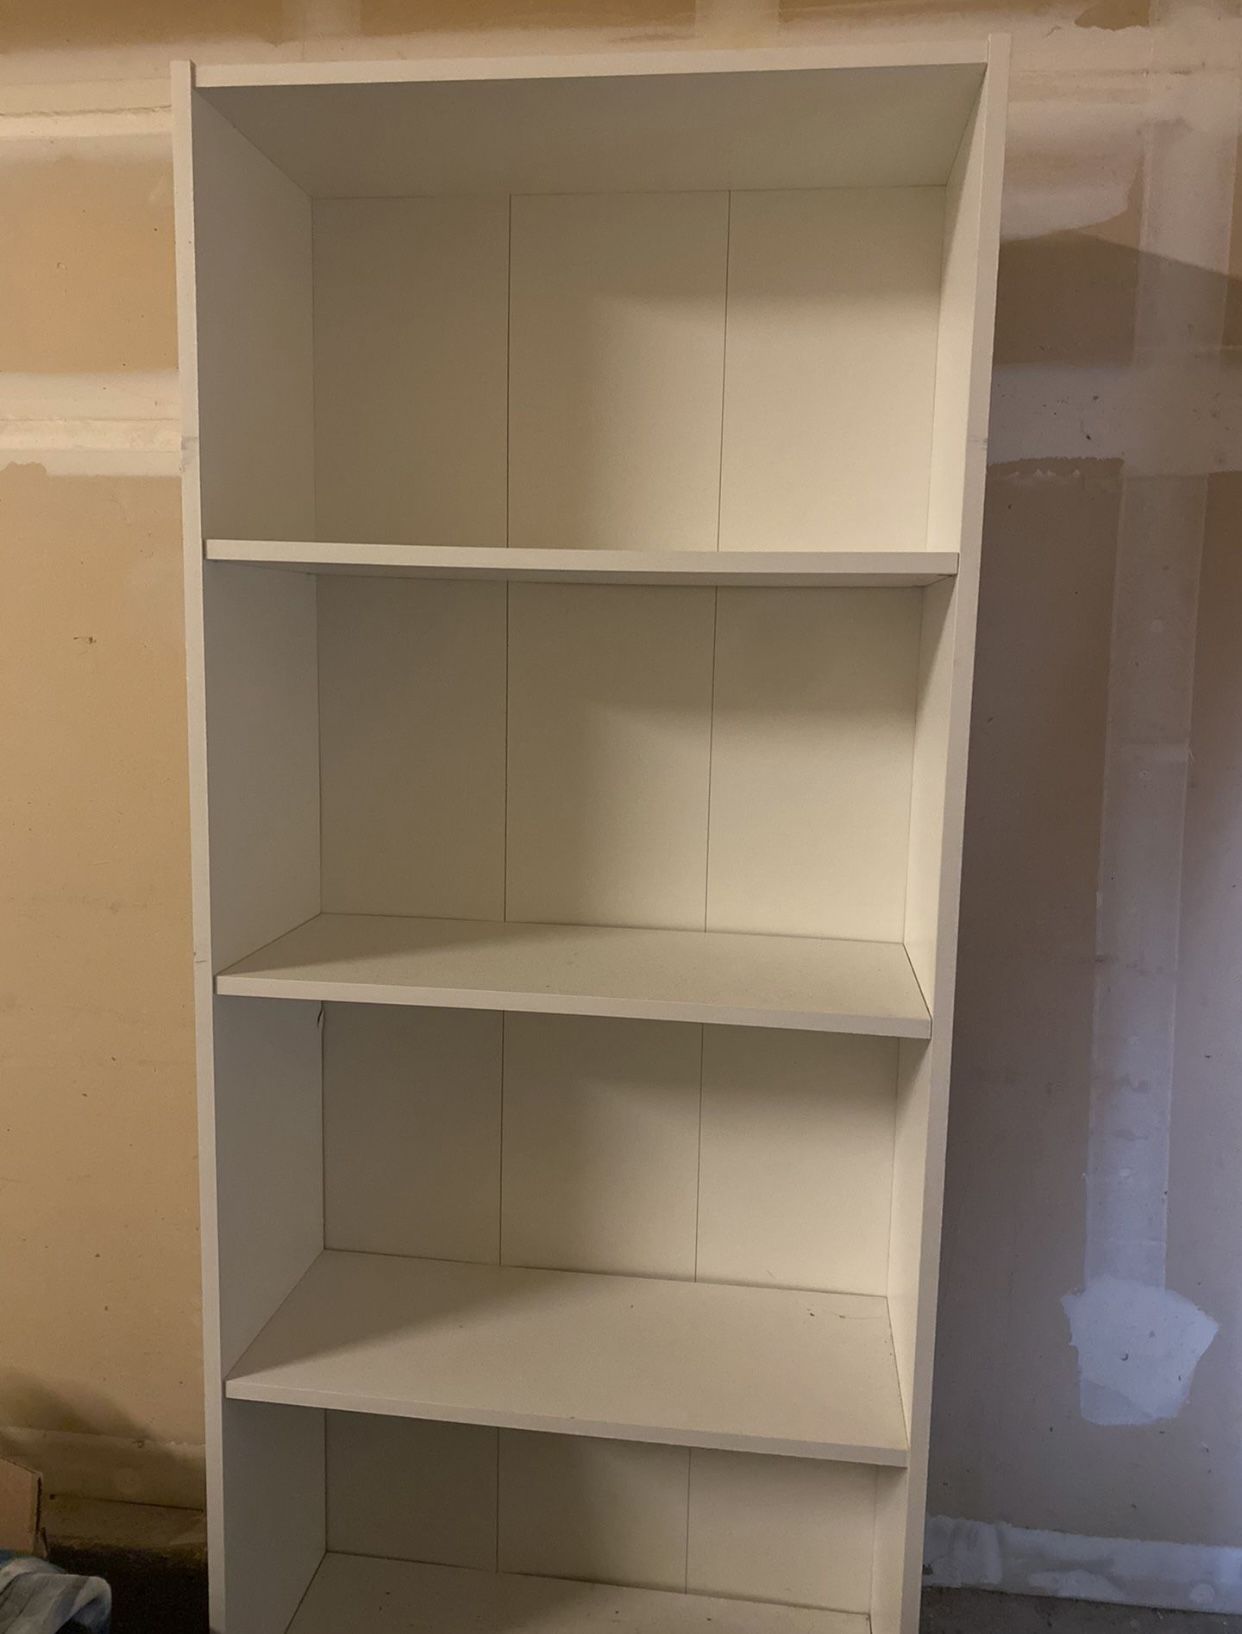 IKEA White Bookshelf